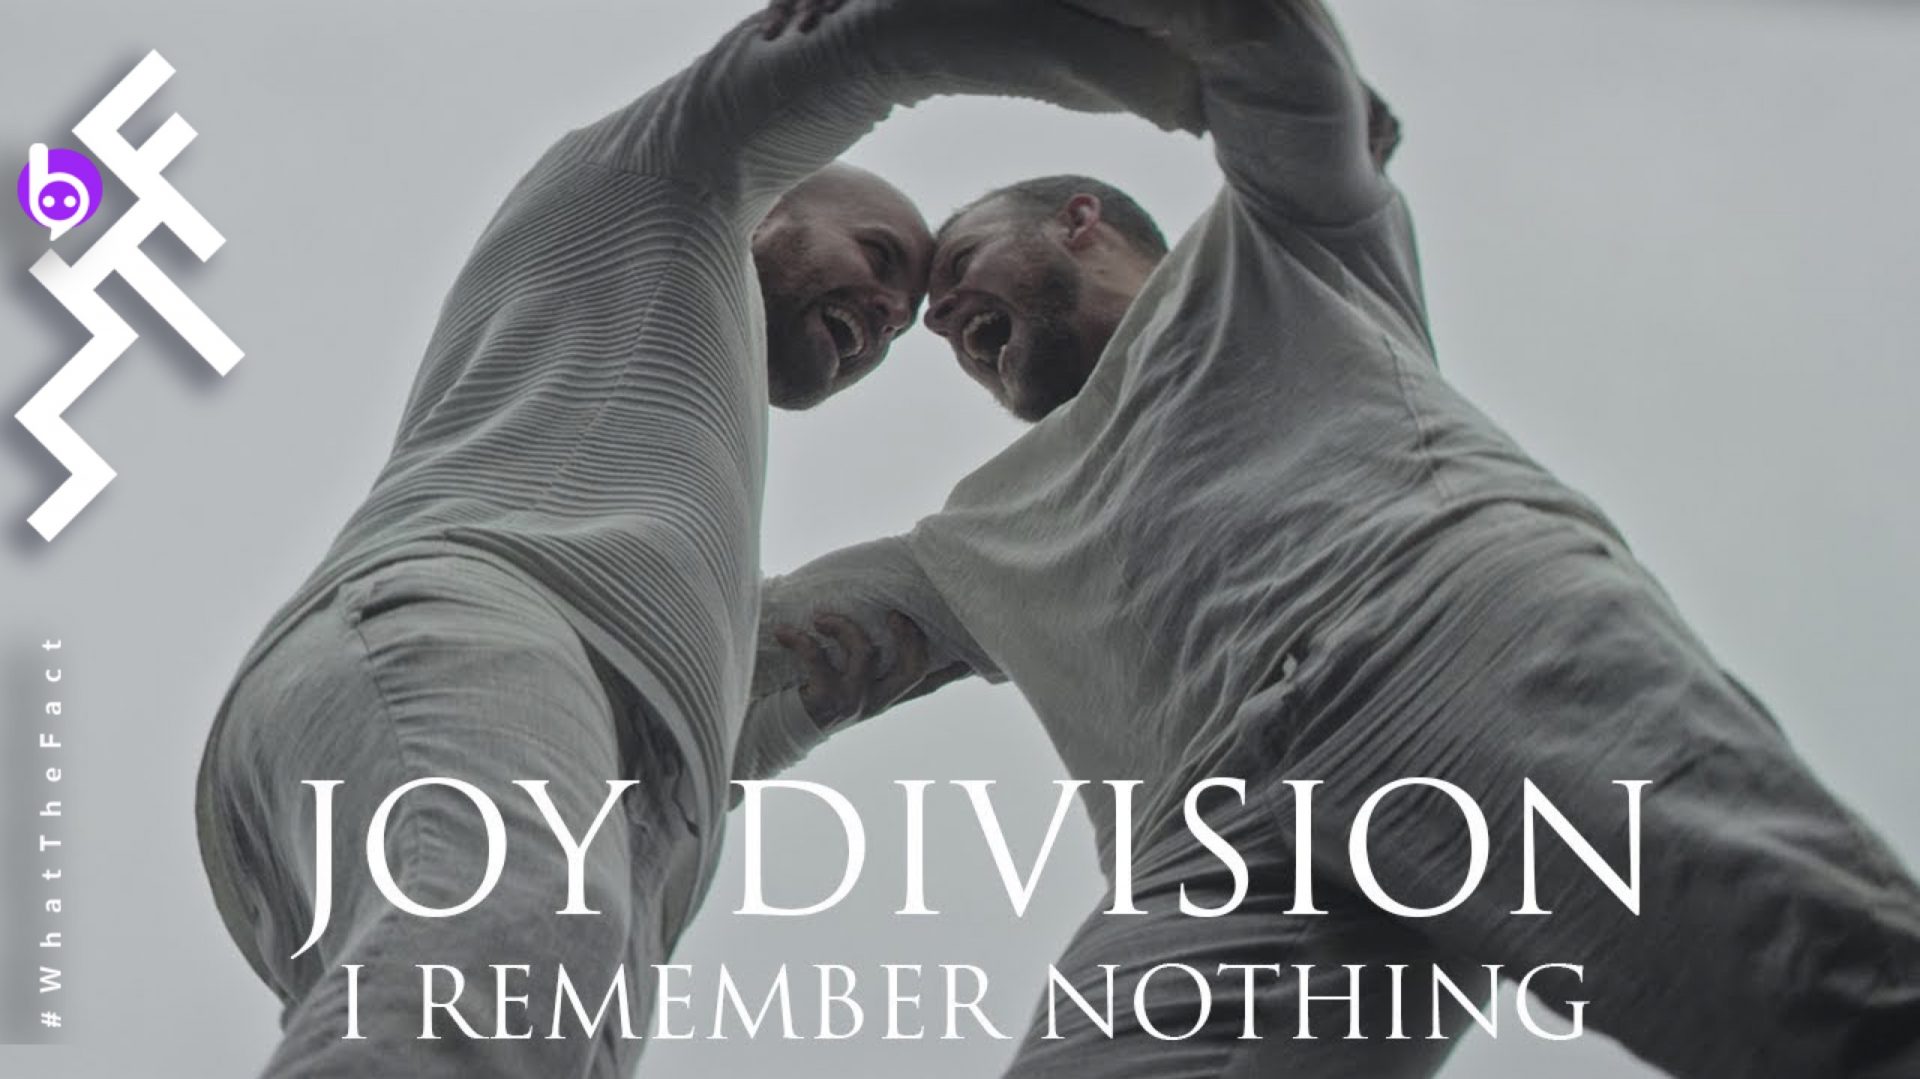 ฉลองครบรอบ 40 ปี ด้วย “I Remember Nothing”  MV ตัวแรกจากอัลบั้ม “Unknown Pleasures” จากวง “Joy Division”